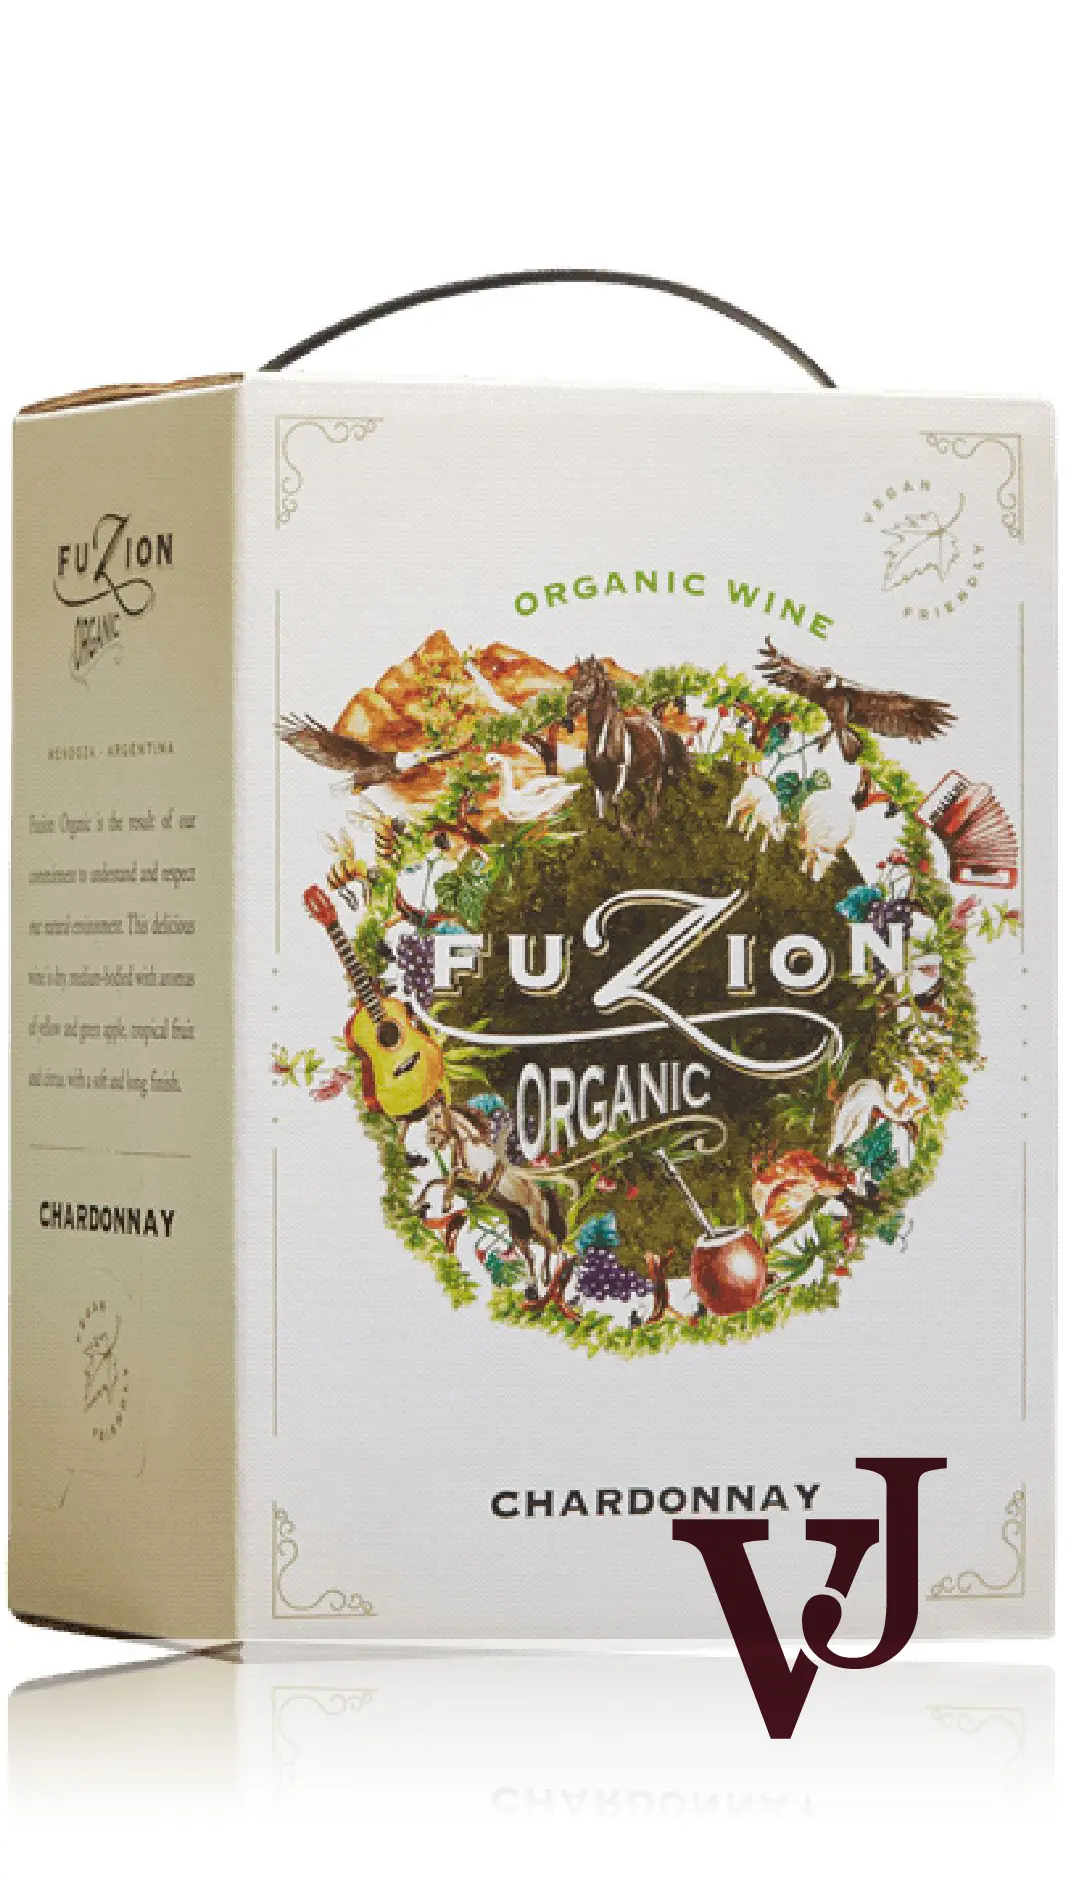 Vitt Vin - Fuzion Organic Chardonnay artikel nummer 690607 från producenten La Agricola från området Argentina - Vinjournalen.se